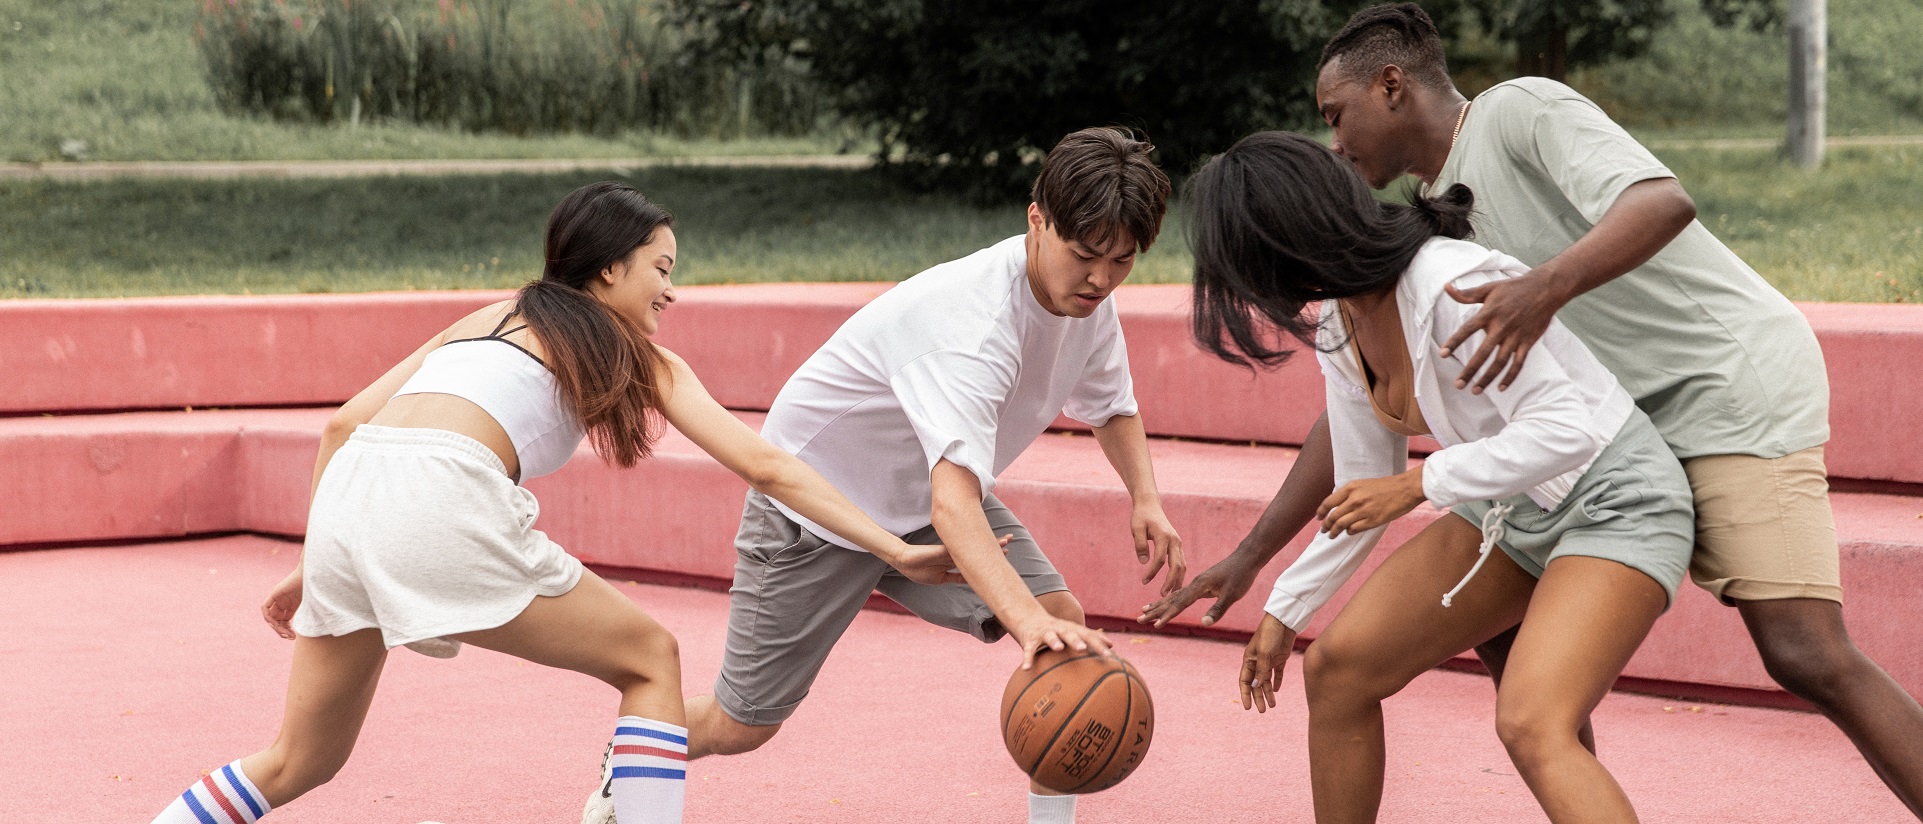 Junge Menschen spielen zusammen Basketball.